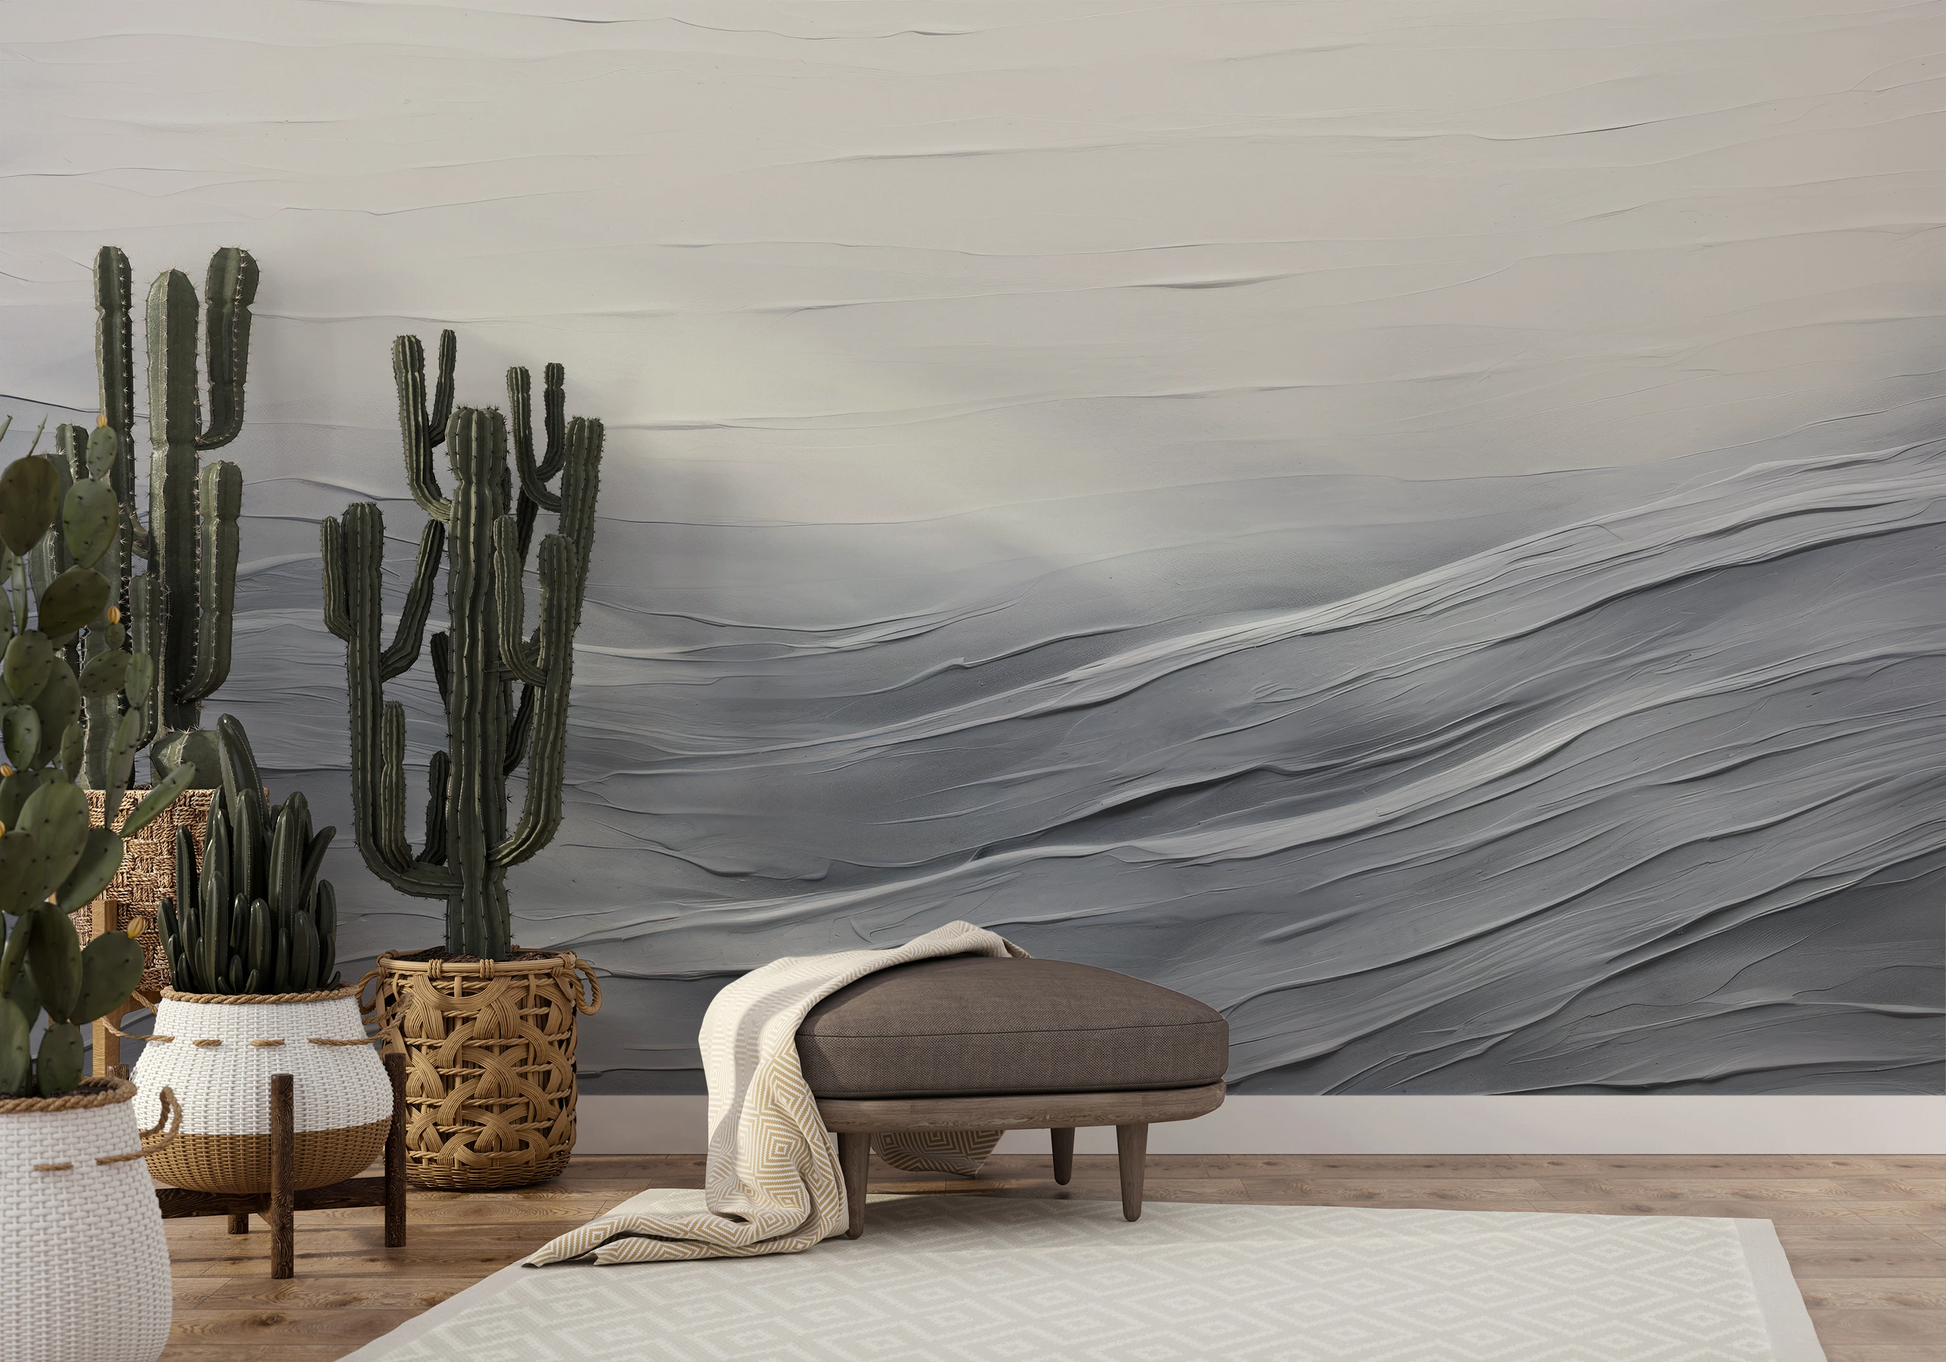 Wzór fototapety malowanej o nazwie Serenity Waves pokazanej w aranżacji wnętrza.